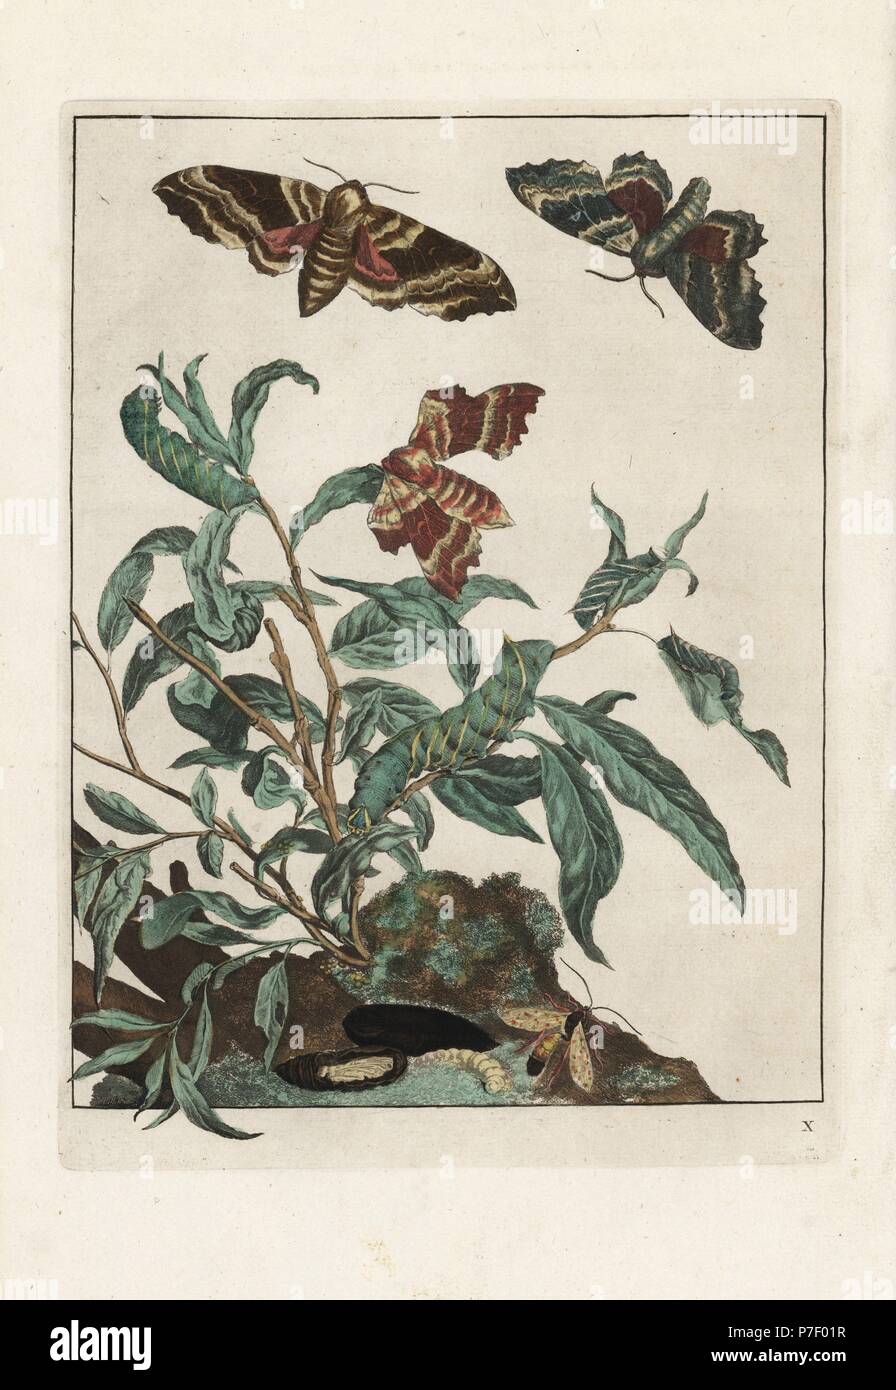 Pappel Hawk-Moth, Laothoe Populi Motte und Larve. Handkoloriert Kupferstich Gravur gezeichnet und geätzt von Jacob l'Admiral in Naauwkeurige Waarneemingen Omtrent de Veranderingen van Veele Insekten (genaue Beschreibungen der Metamorphosen von Insekten), J. Sluyter, Amsterdam, 1774. Für diese zweite Auflage hinzugefügt M. Houttuyn der ursprünglichen 25 eine andere acht Platten. Stockfoto